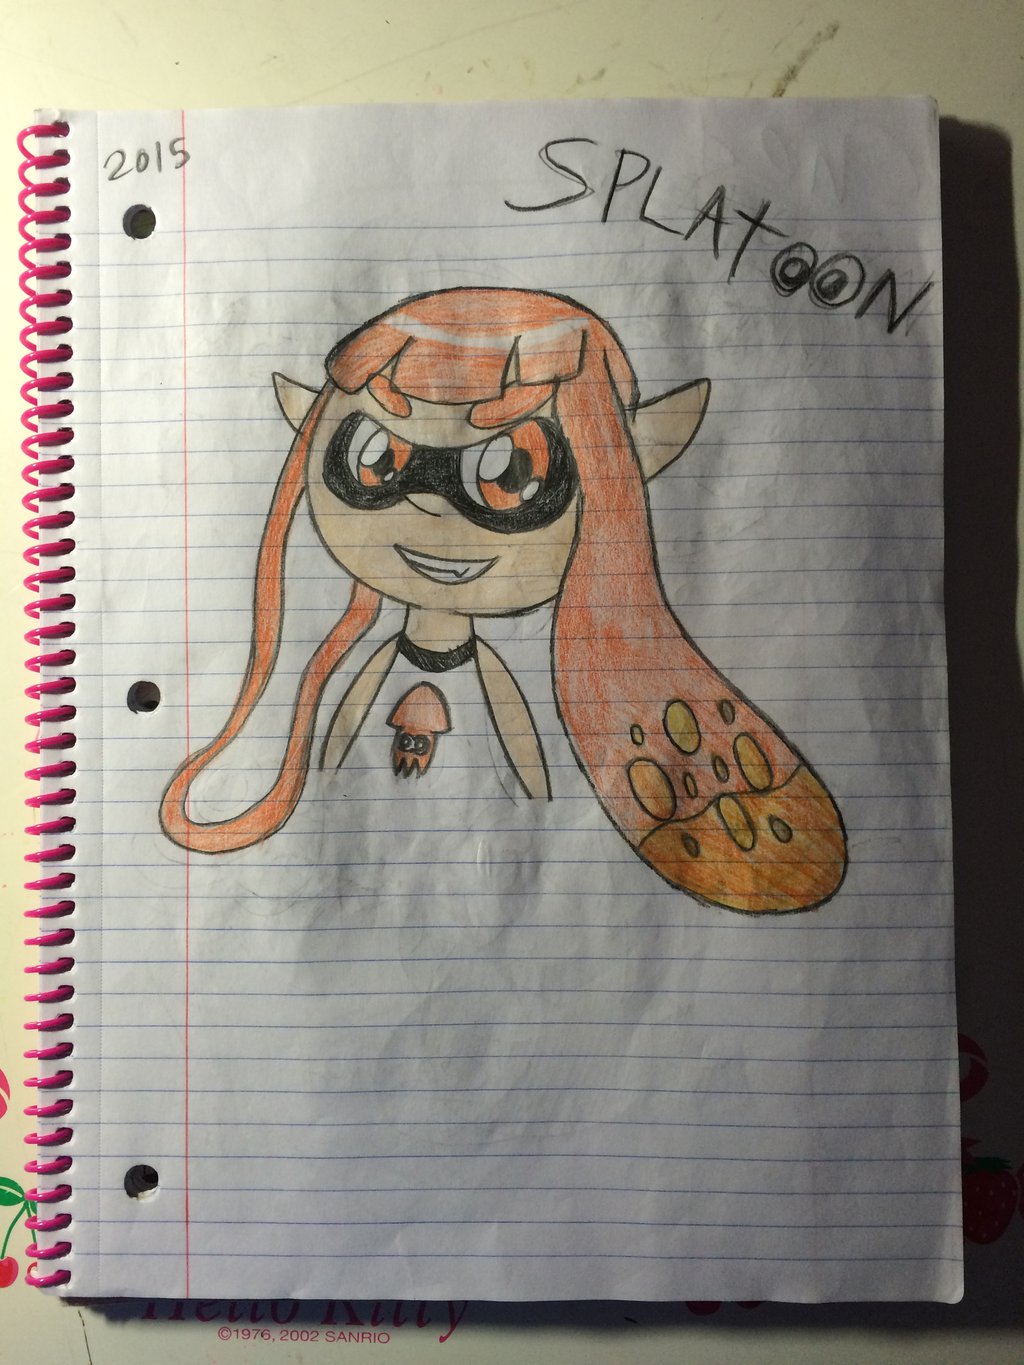 Splatoon Inkling Girl by Kirbyfan1234 on